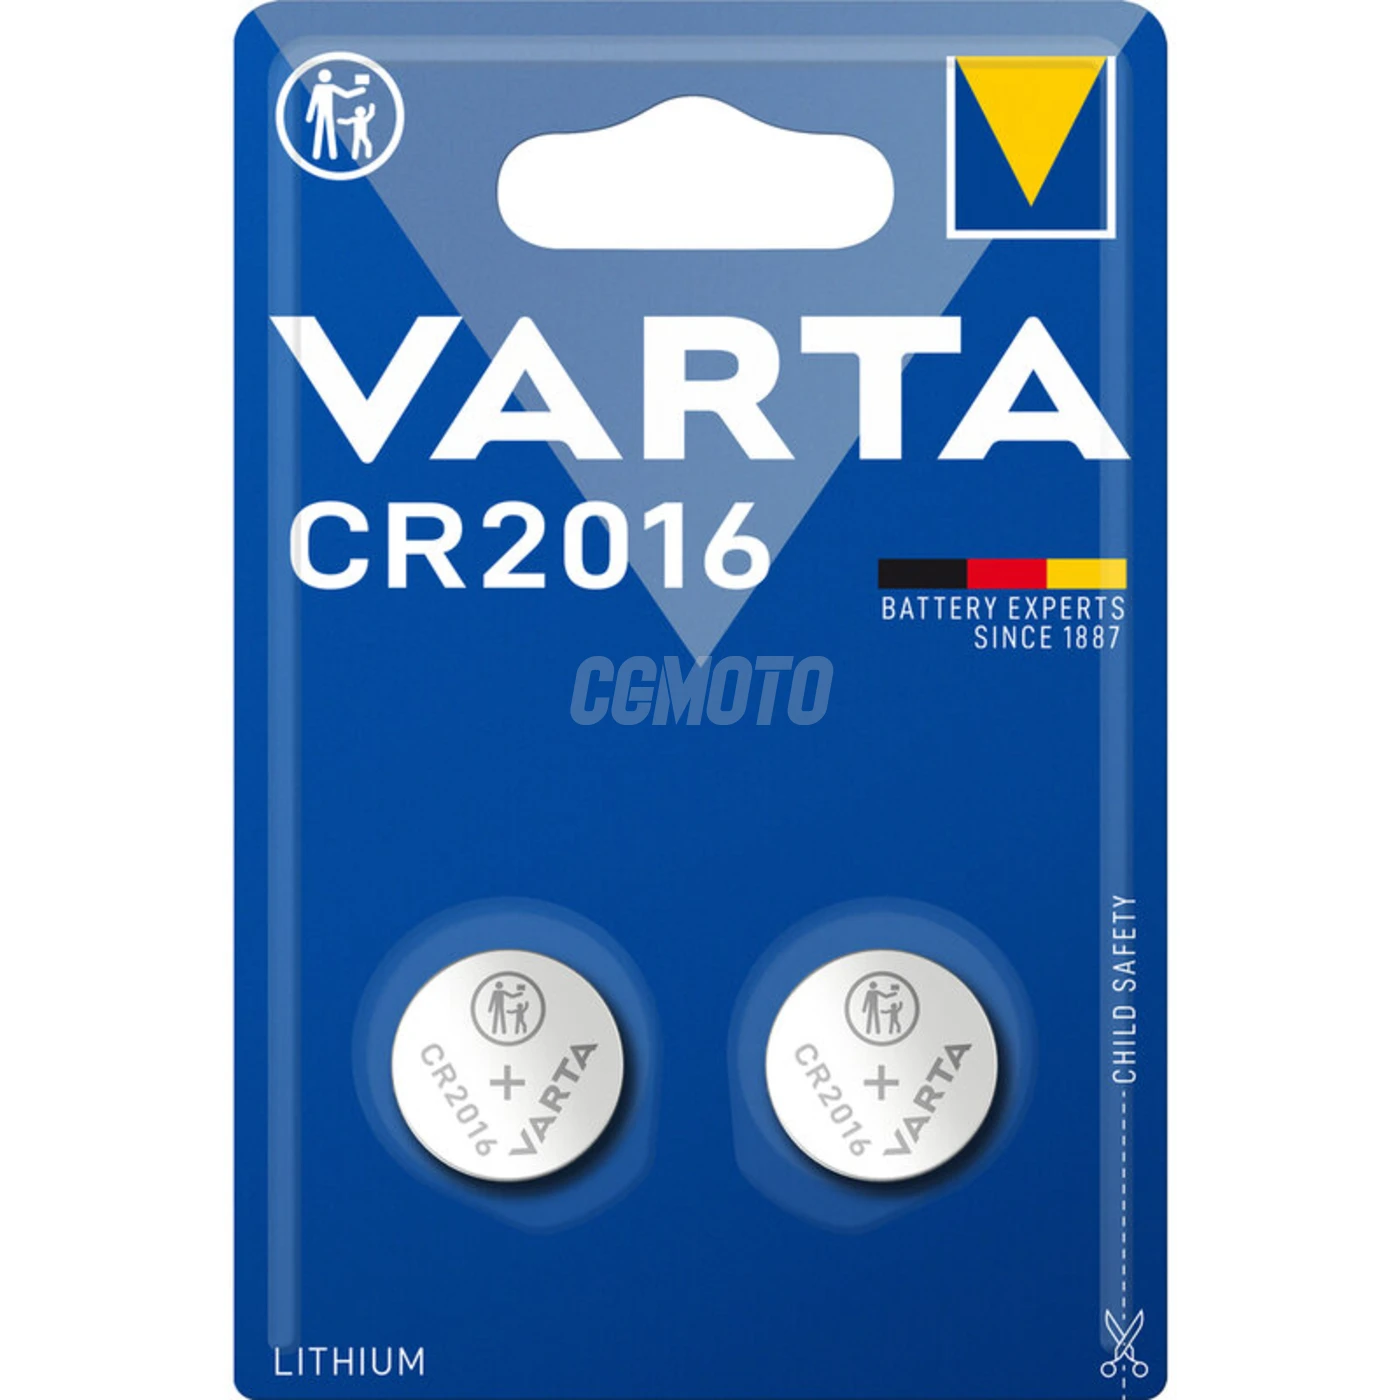 Varta CR2016 lithium x 2 pile (blister)